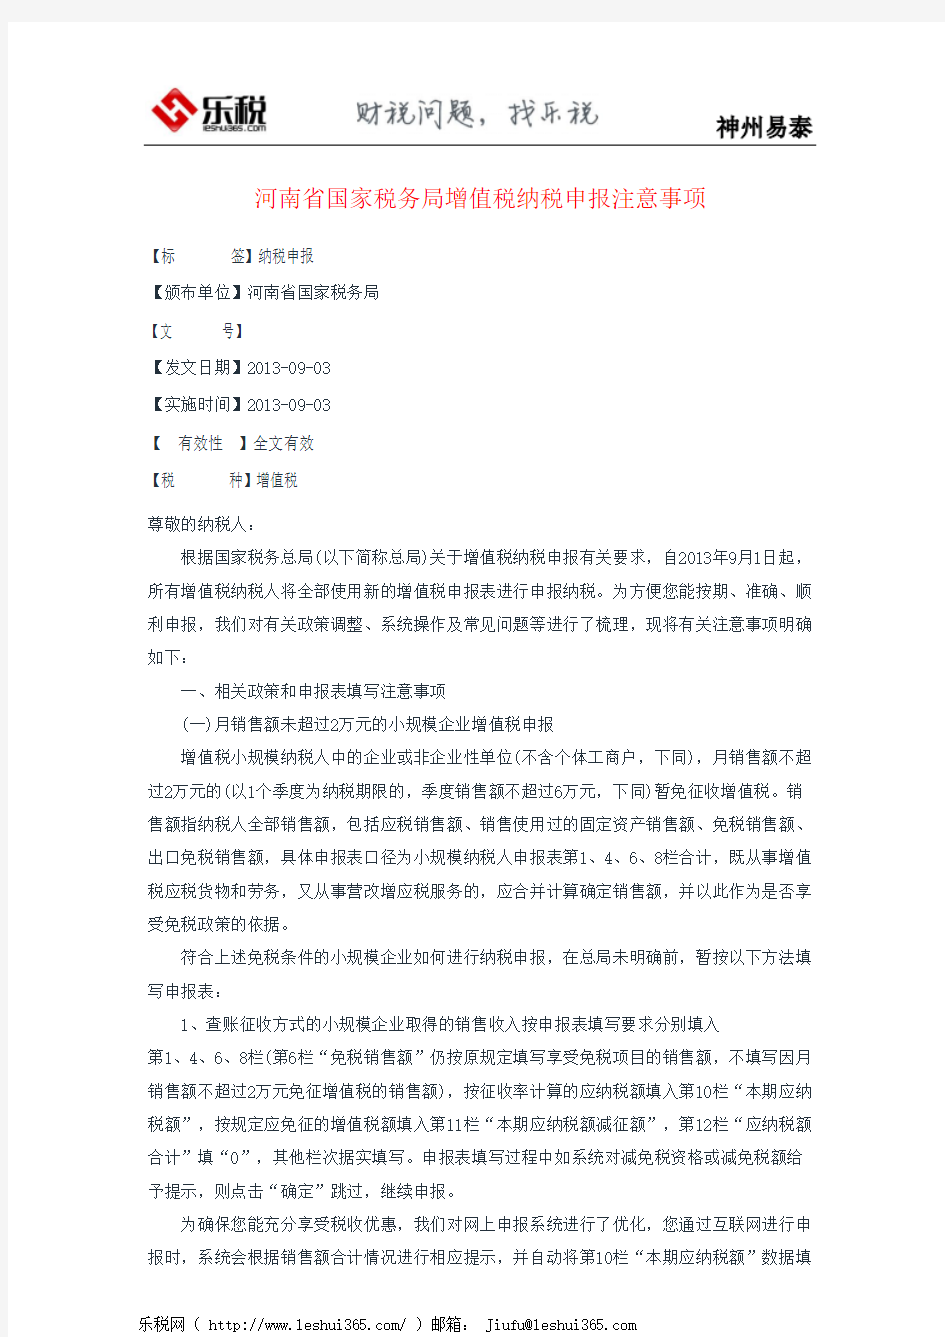 河南省国家税务局增值税纳税申报注意事项